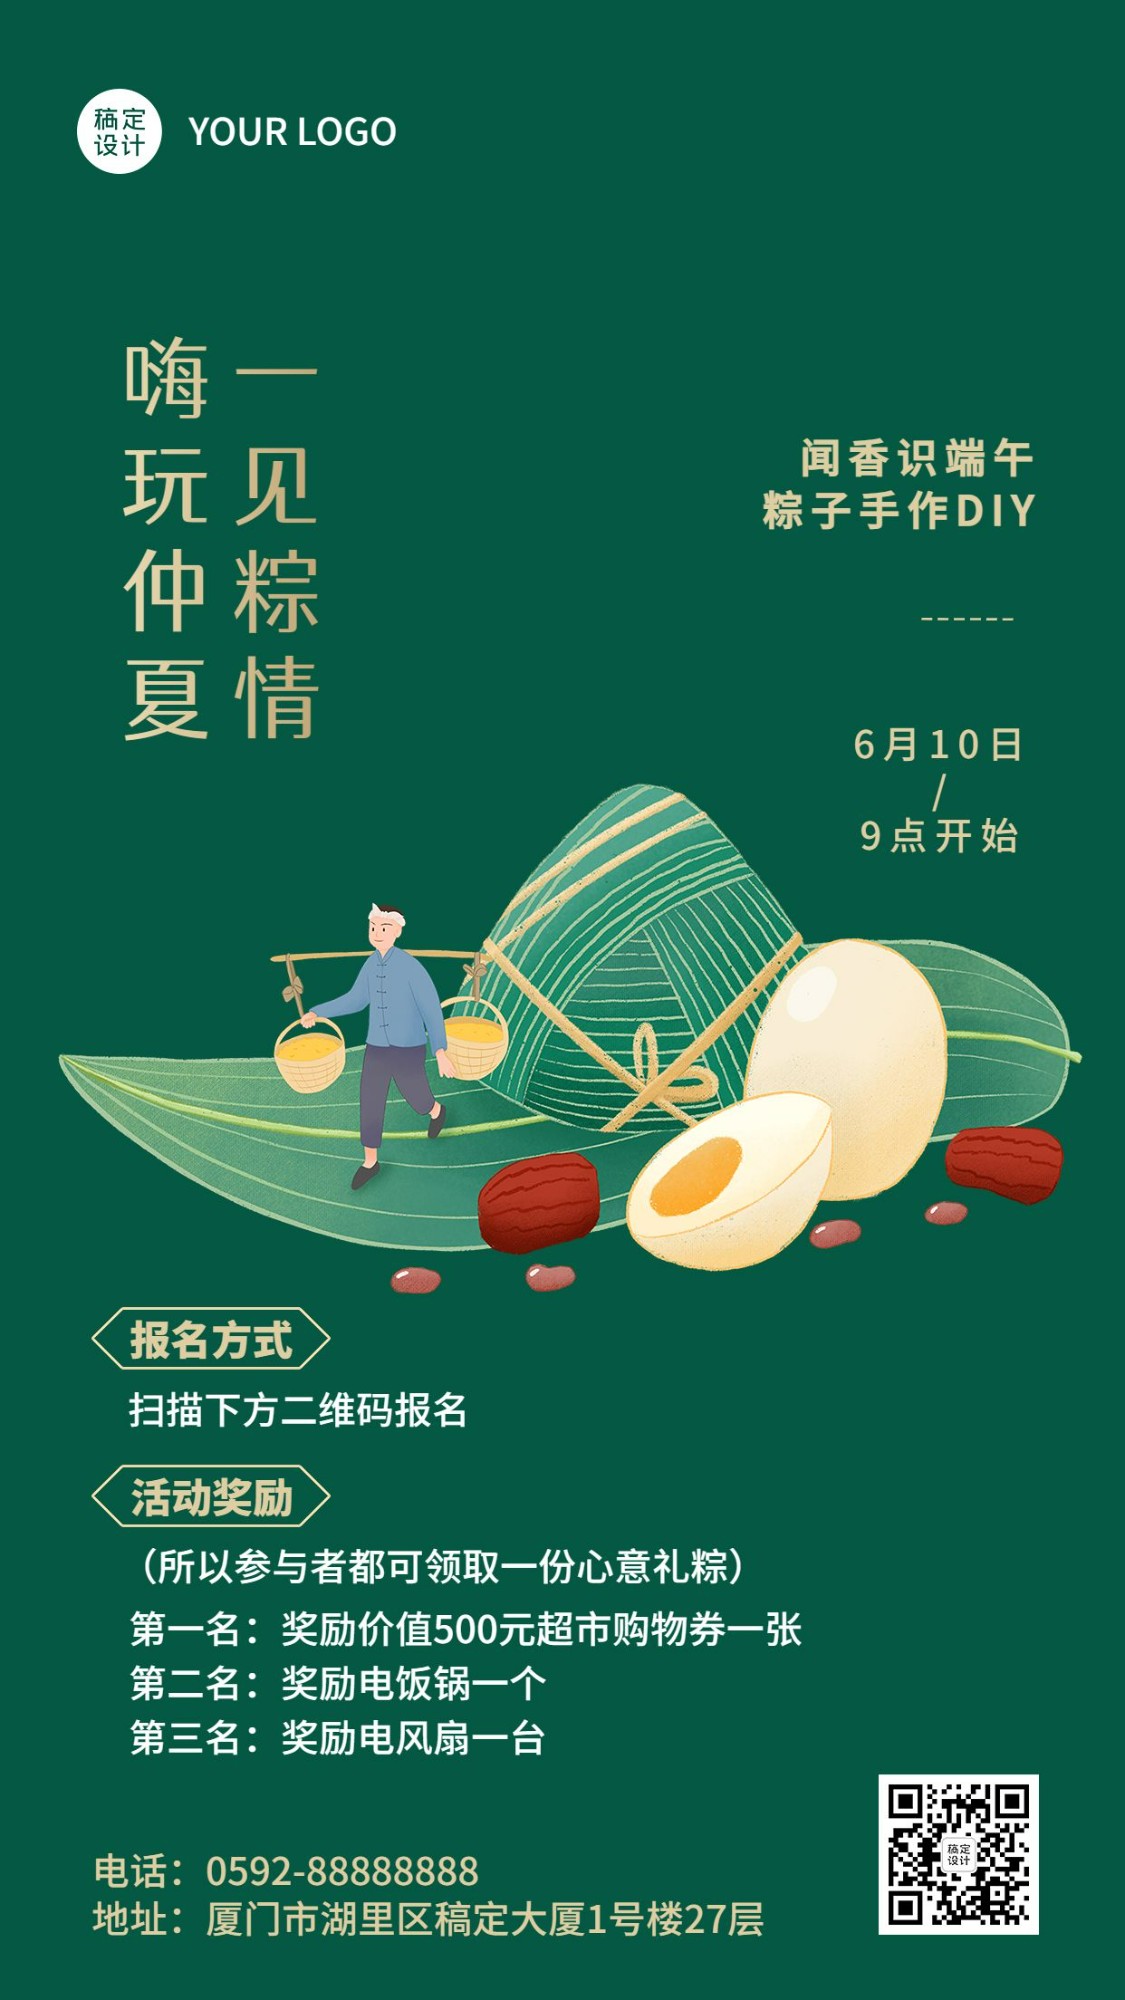 端午节包粽子节日活动插画手机海报